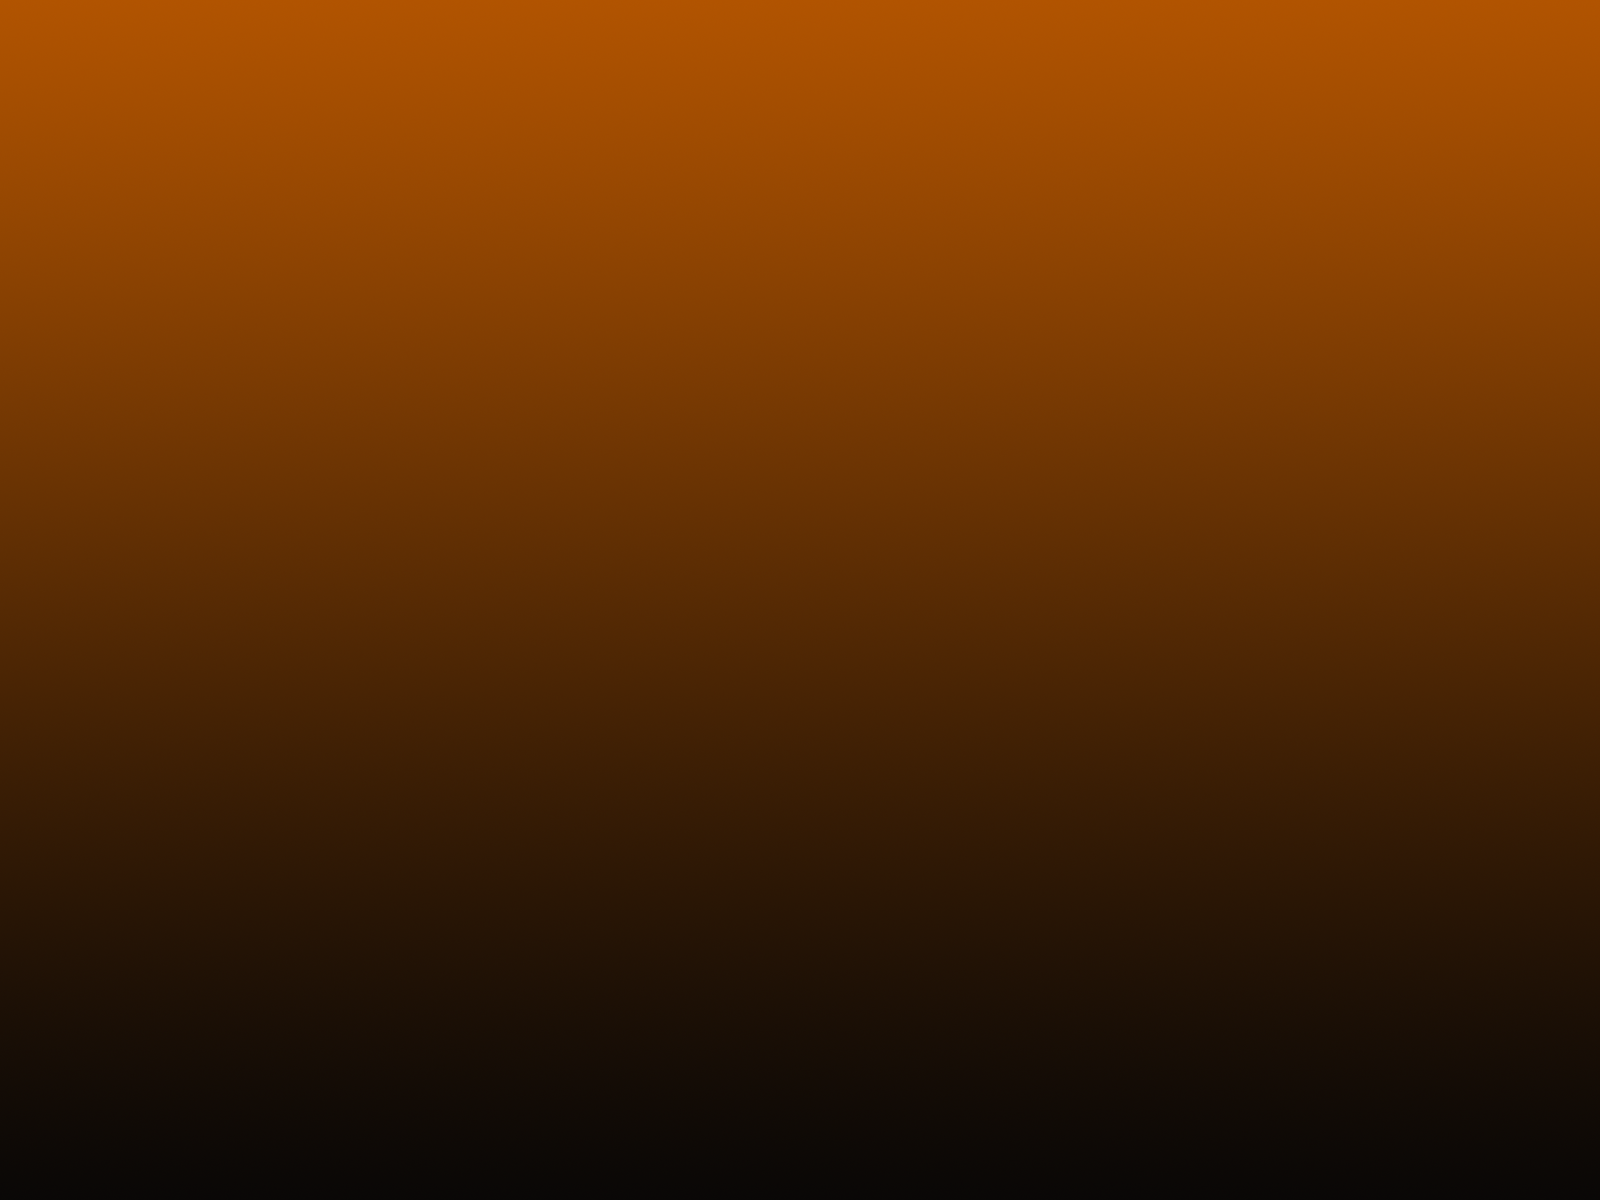 Black And Orange Backgrounds Group - Orange To Black Fade Background , HD Wallpaper & Backgrounds